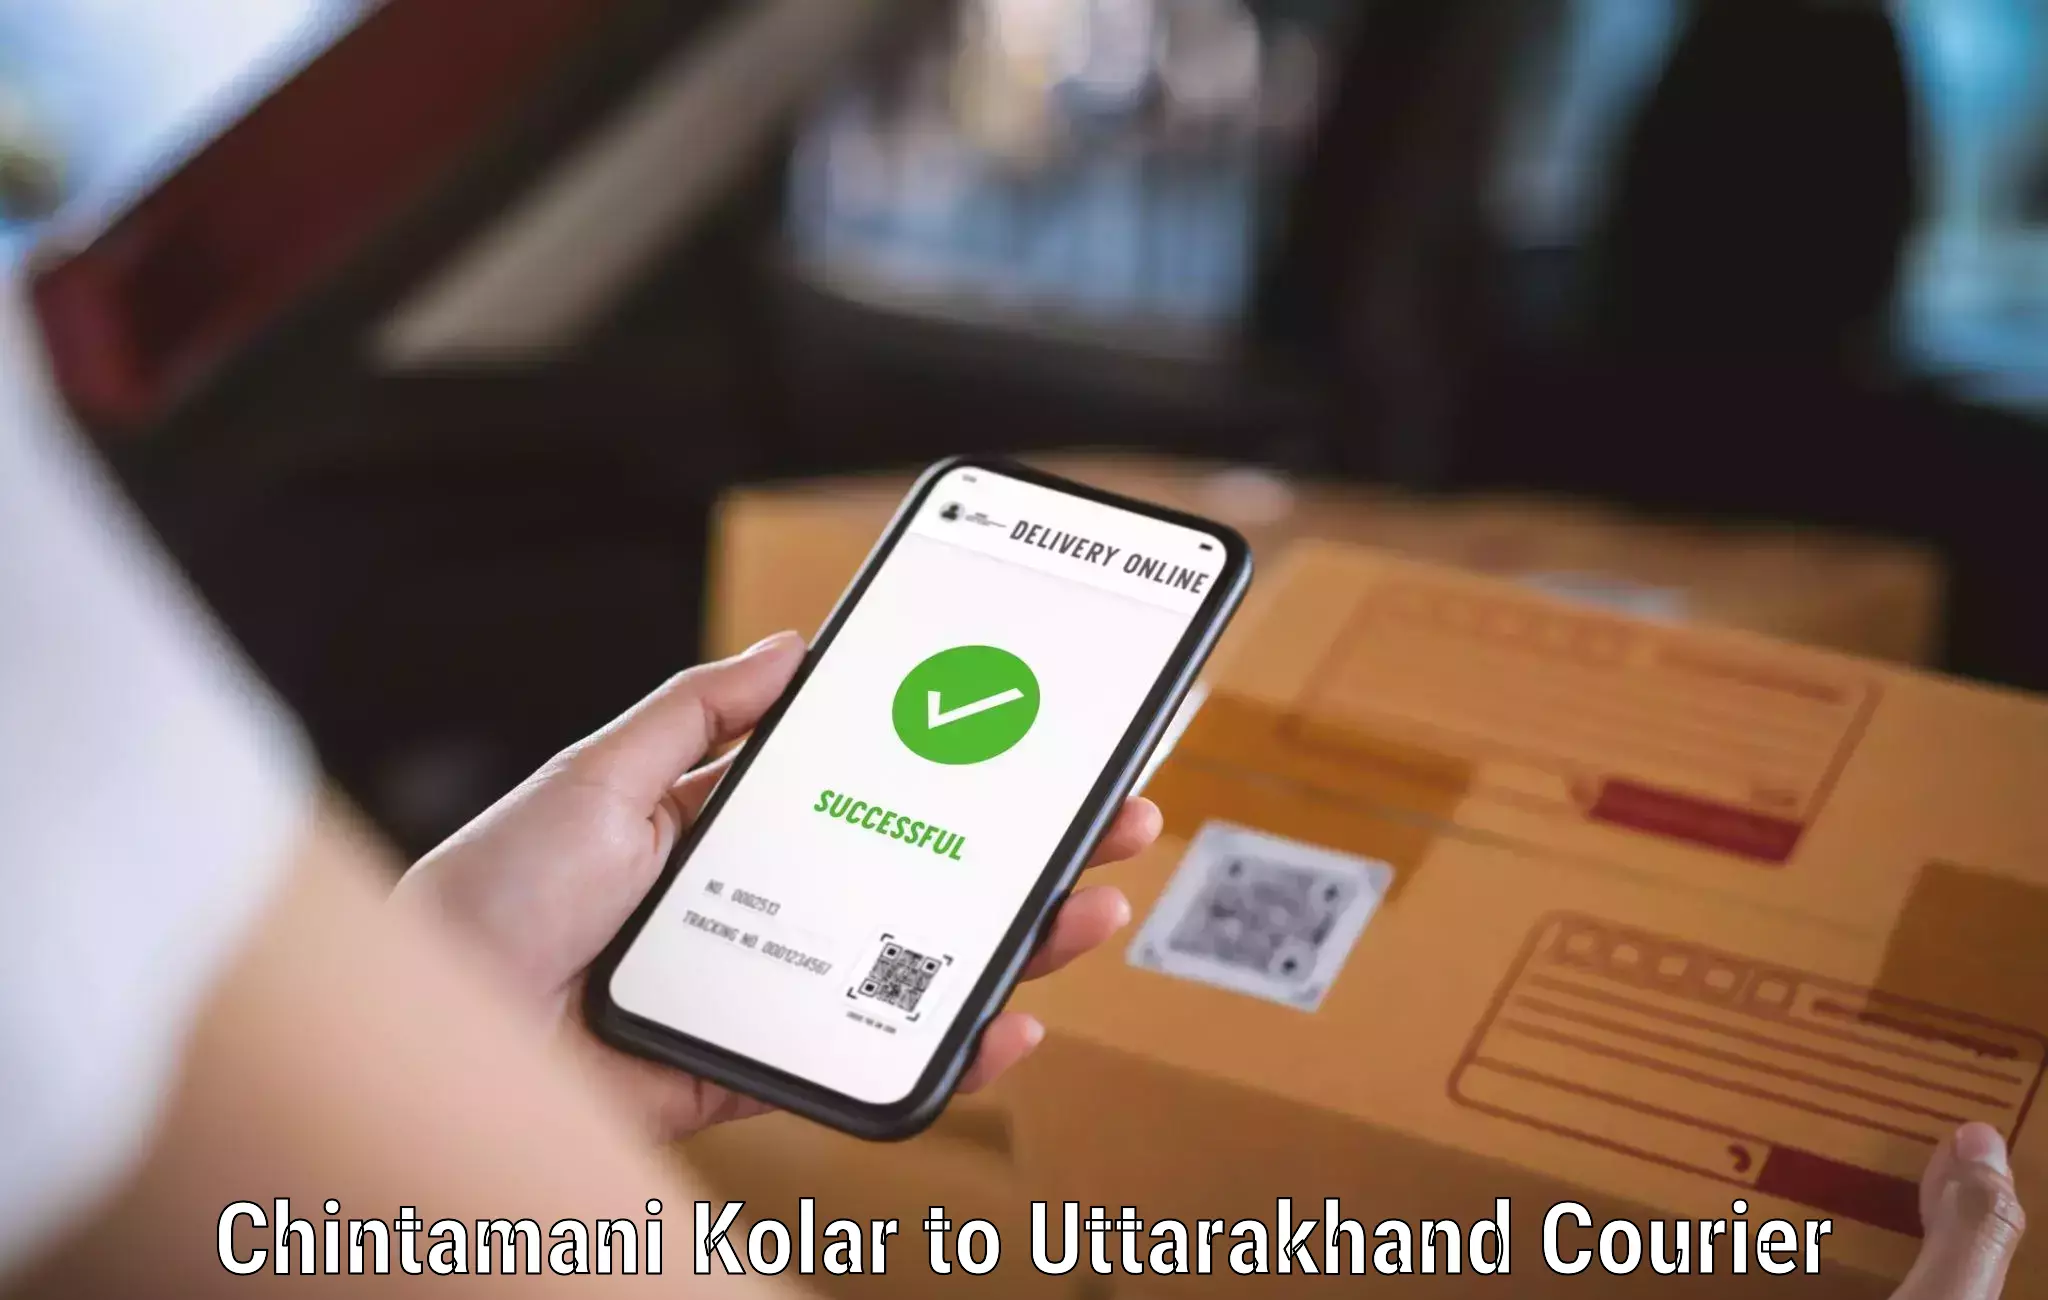 Secure packaging in Chintamani Kolar to Pithoragarh